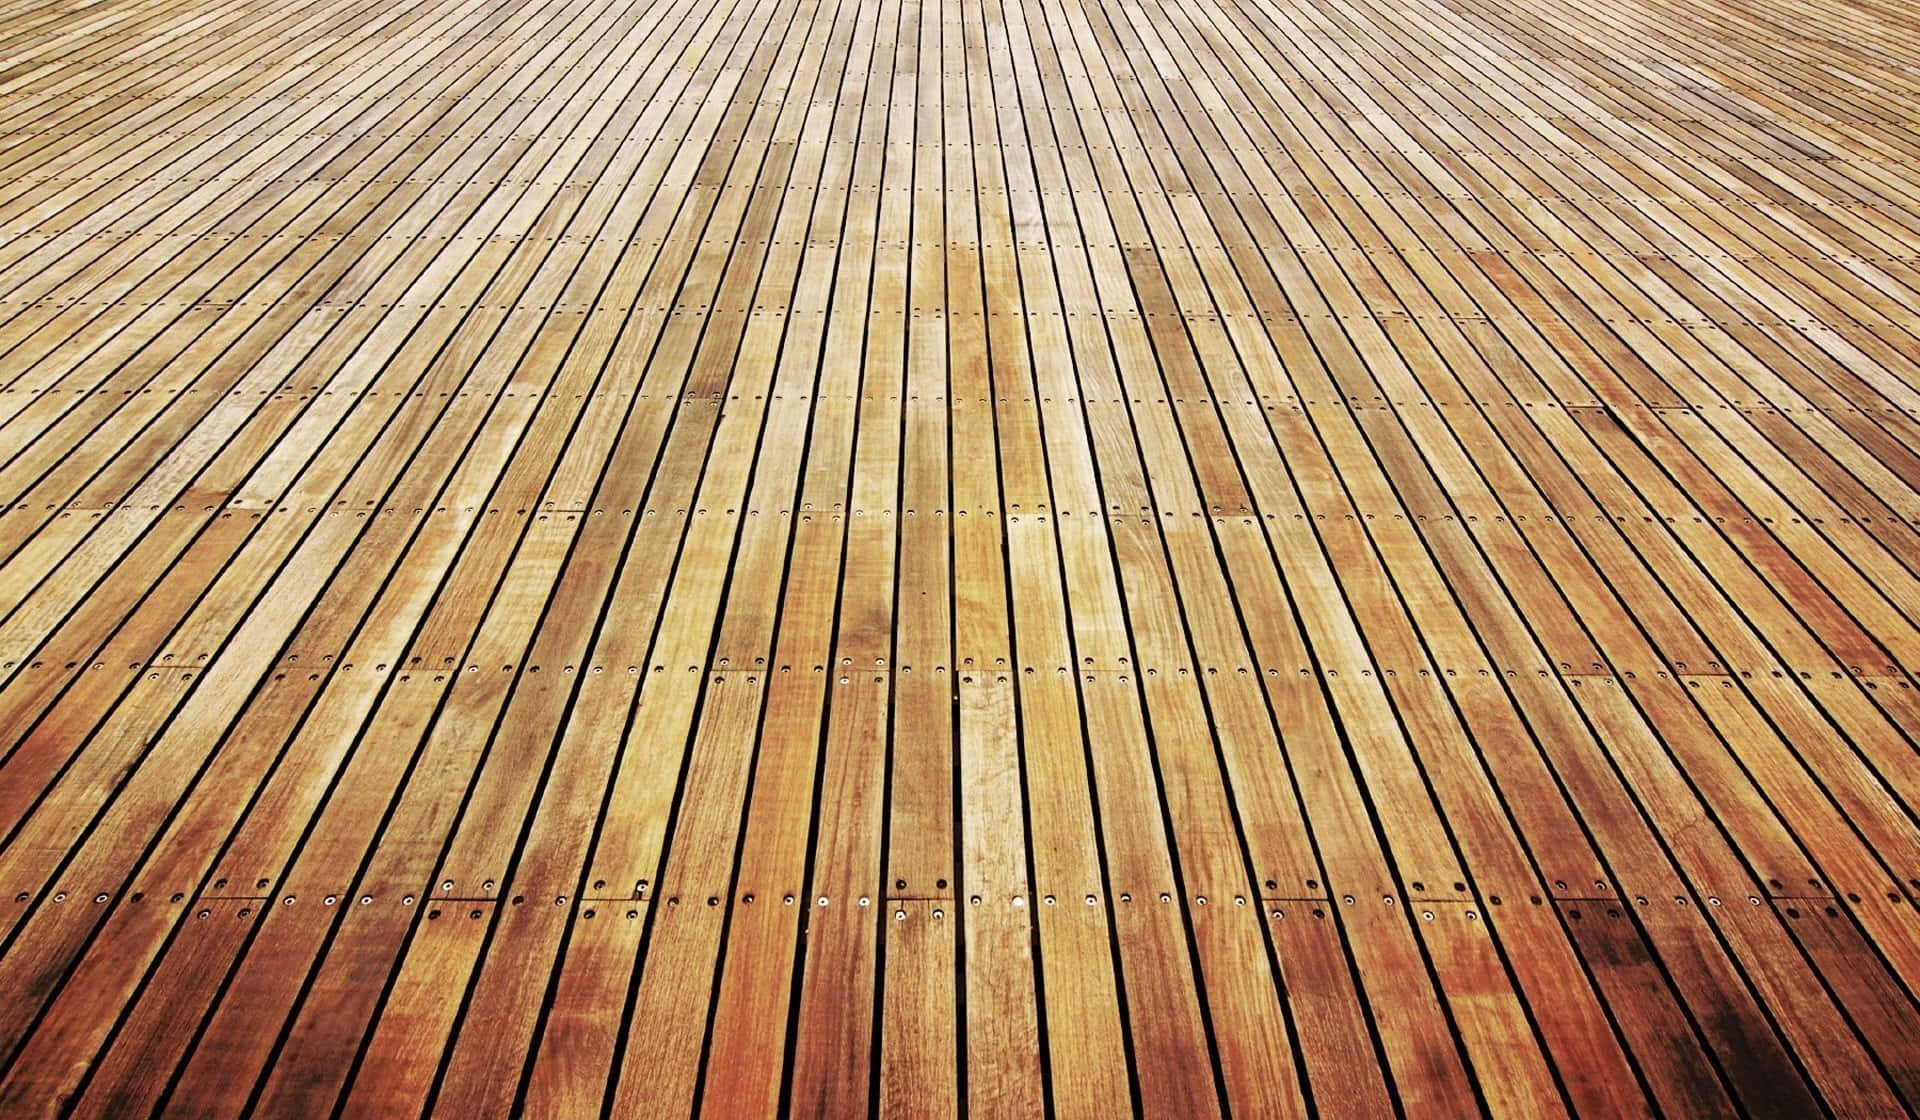 Wooden Floor With Wooden Planks